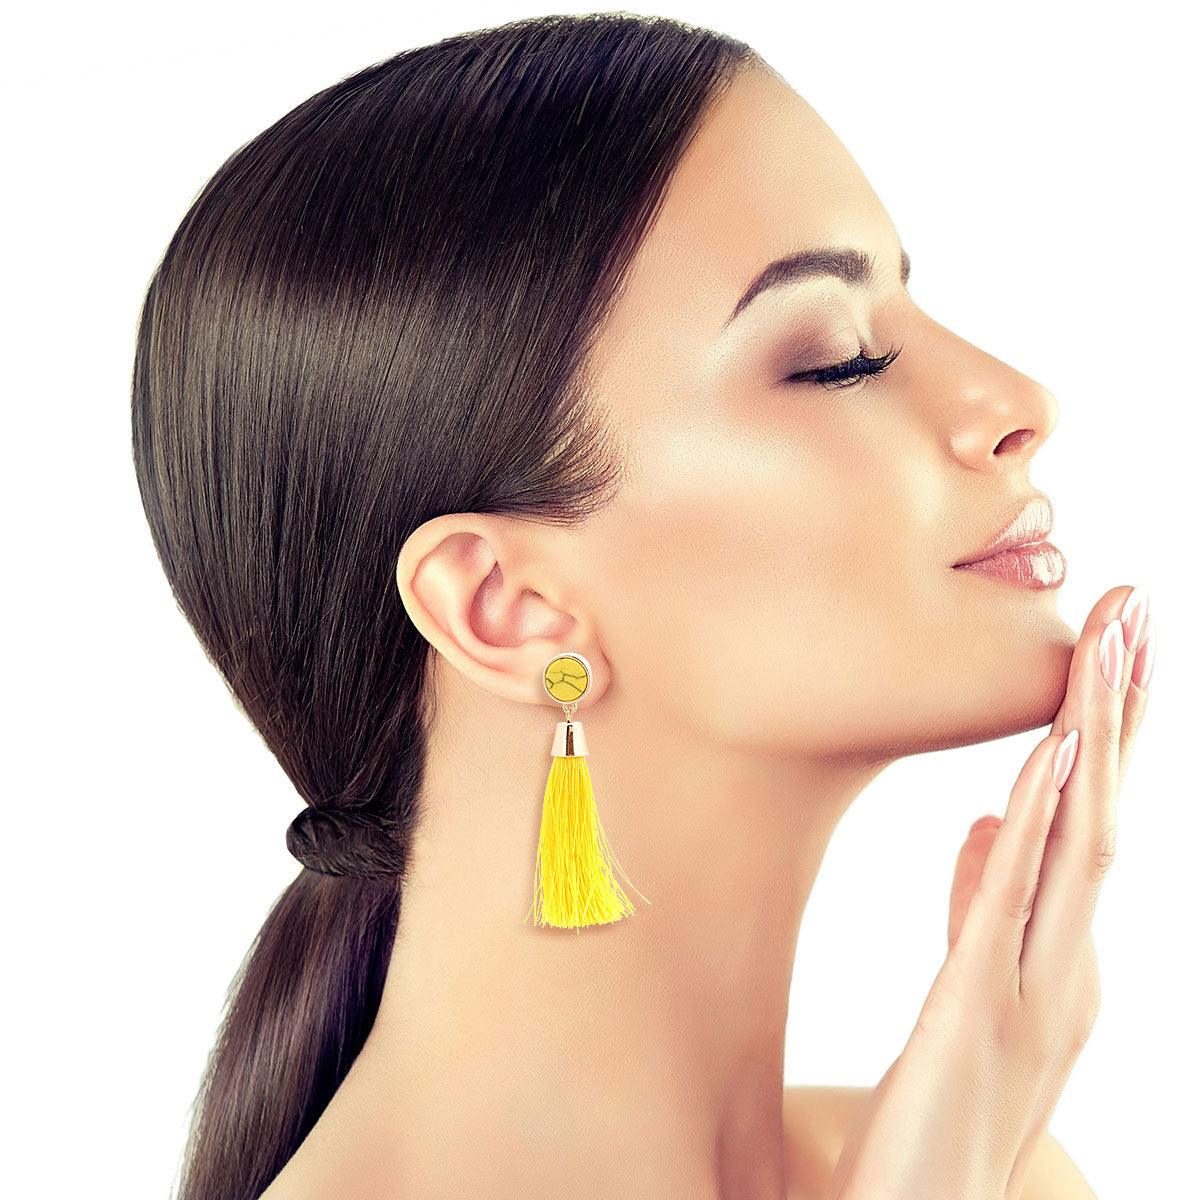 Mustard Yellow Earrings - Eye Earrings - Yellow Tassel Earrings - Lulus